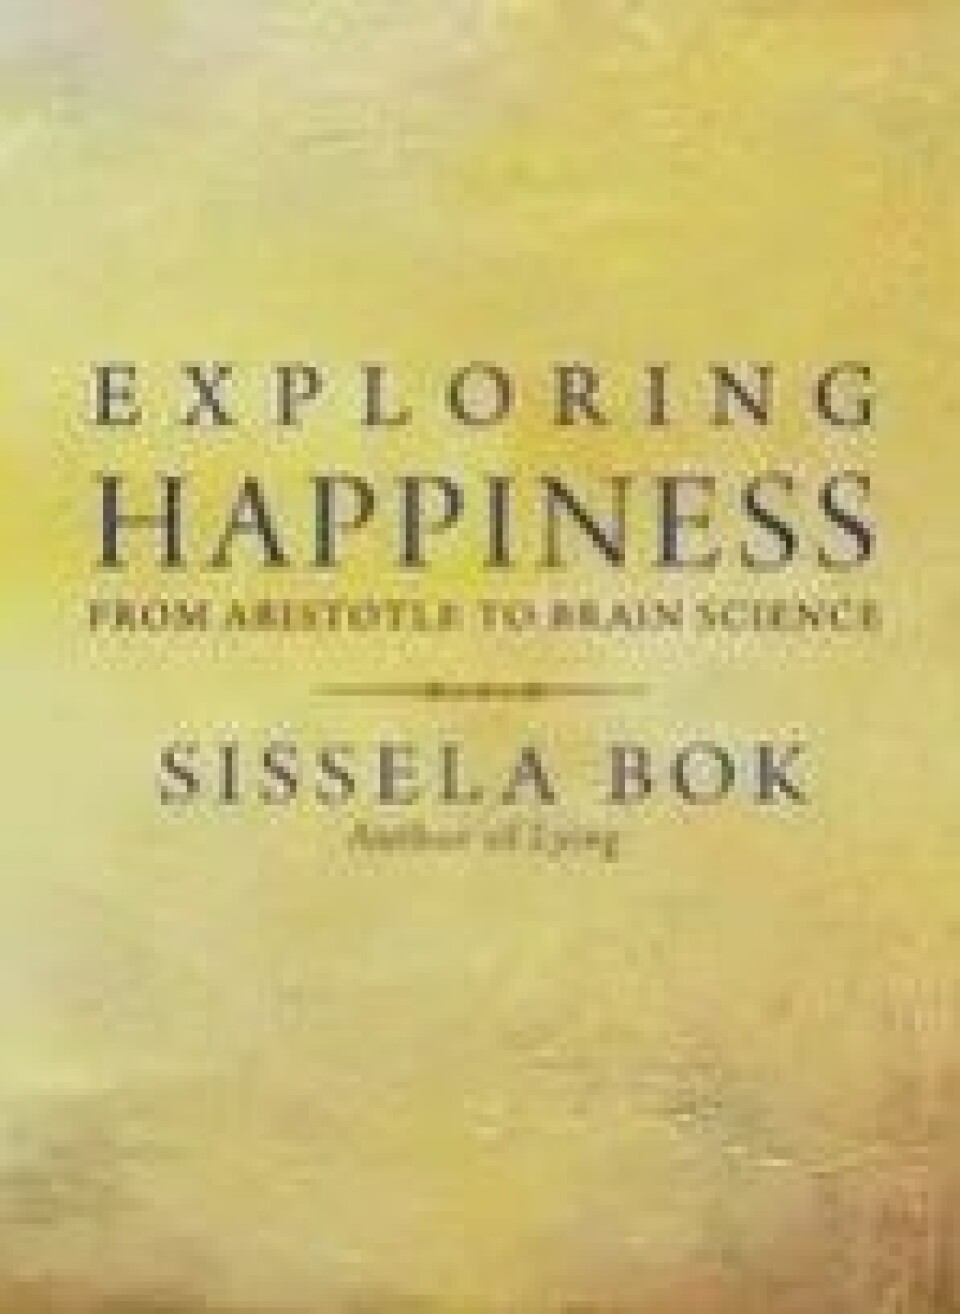 Sissela Boks Exploring Happiness. From Aristotle to Brain Science er tidvis inspirerende, men virker tilfeldig, skriver Hallvard Fossheim.